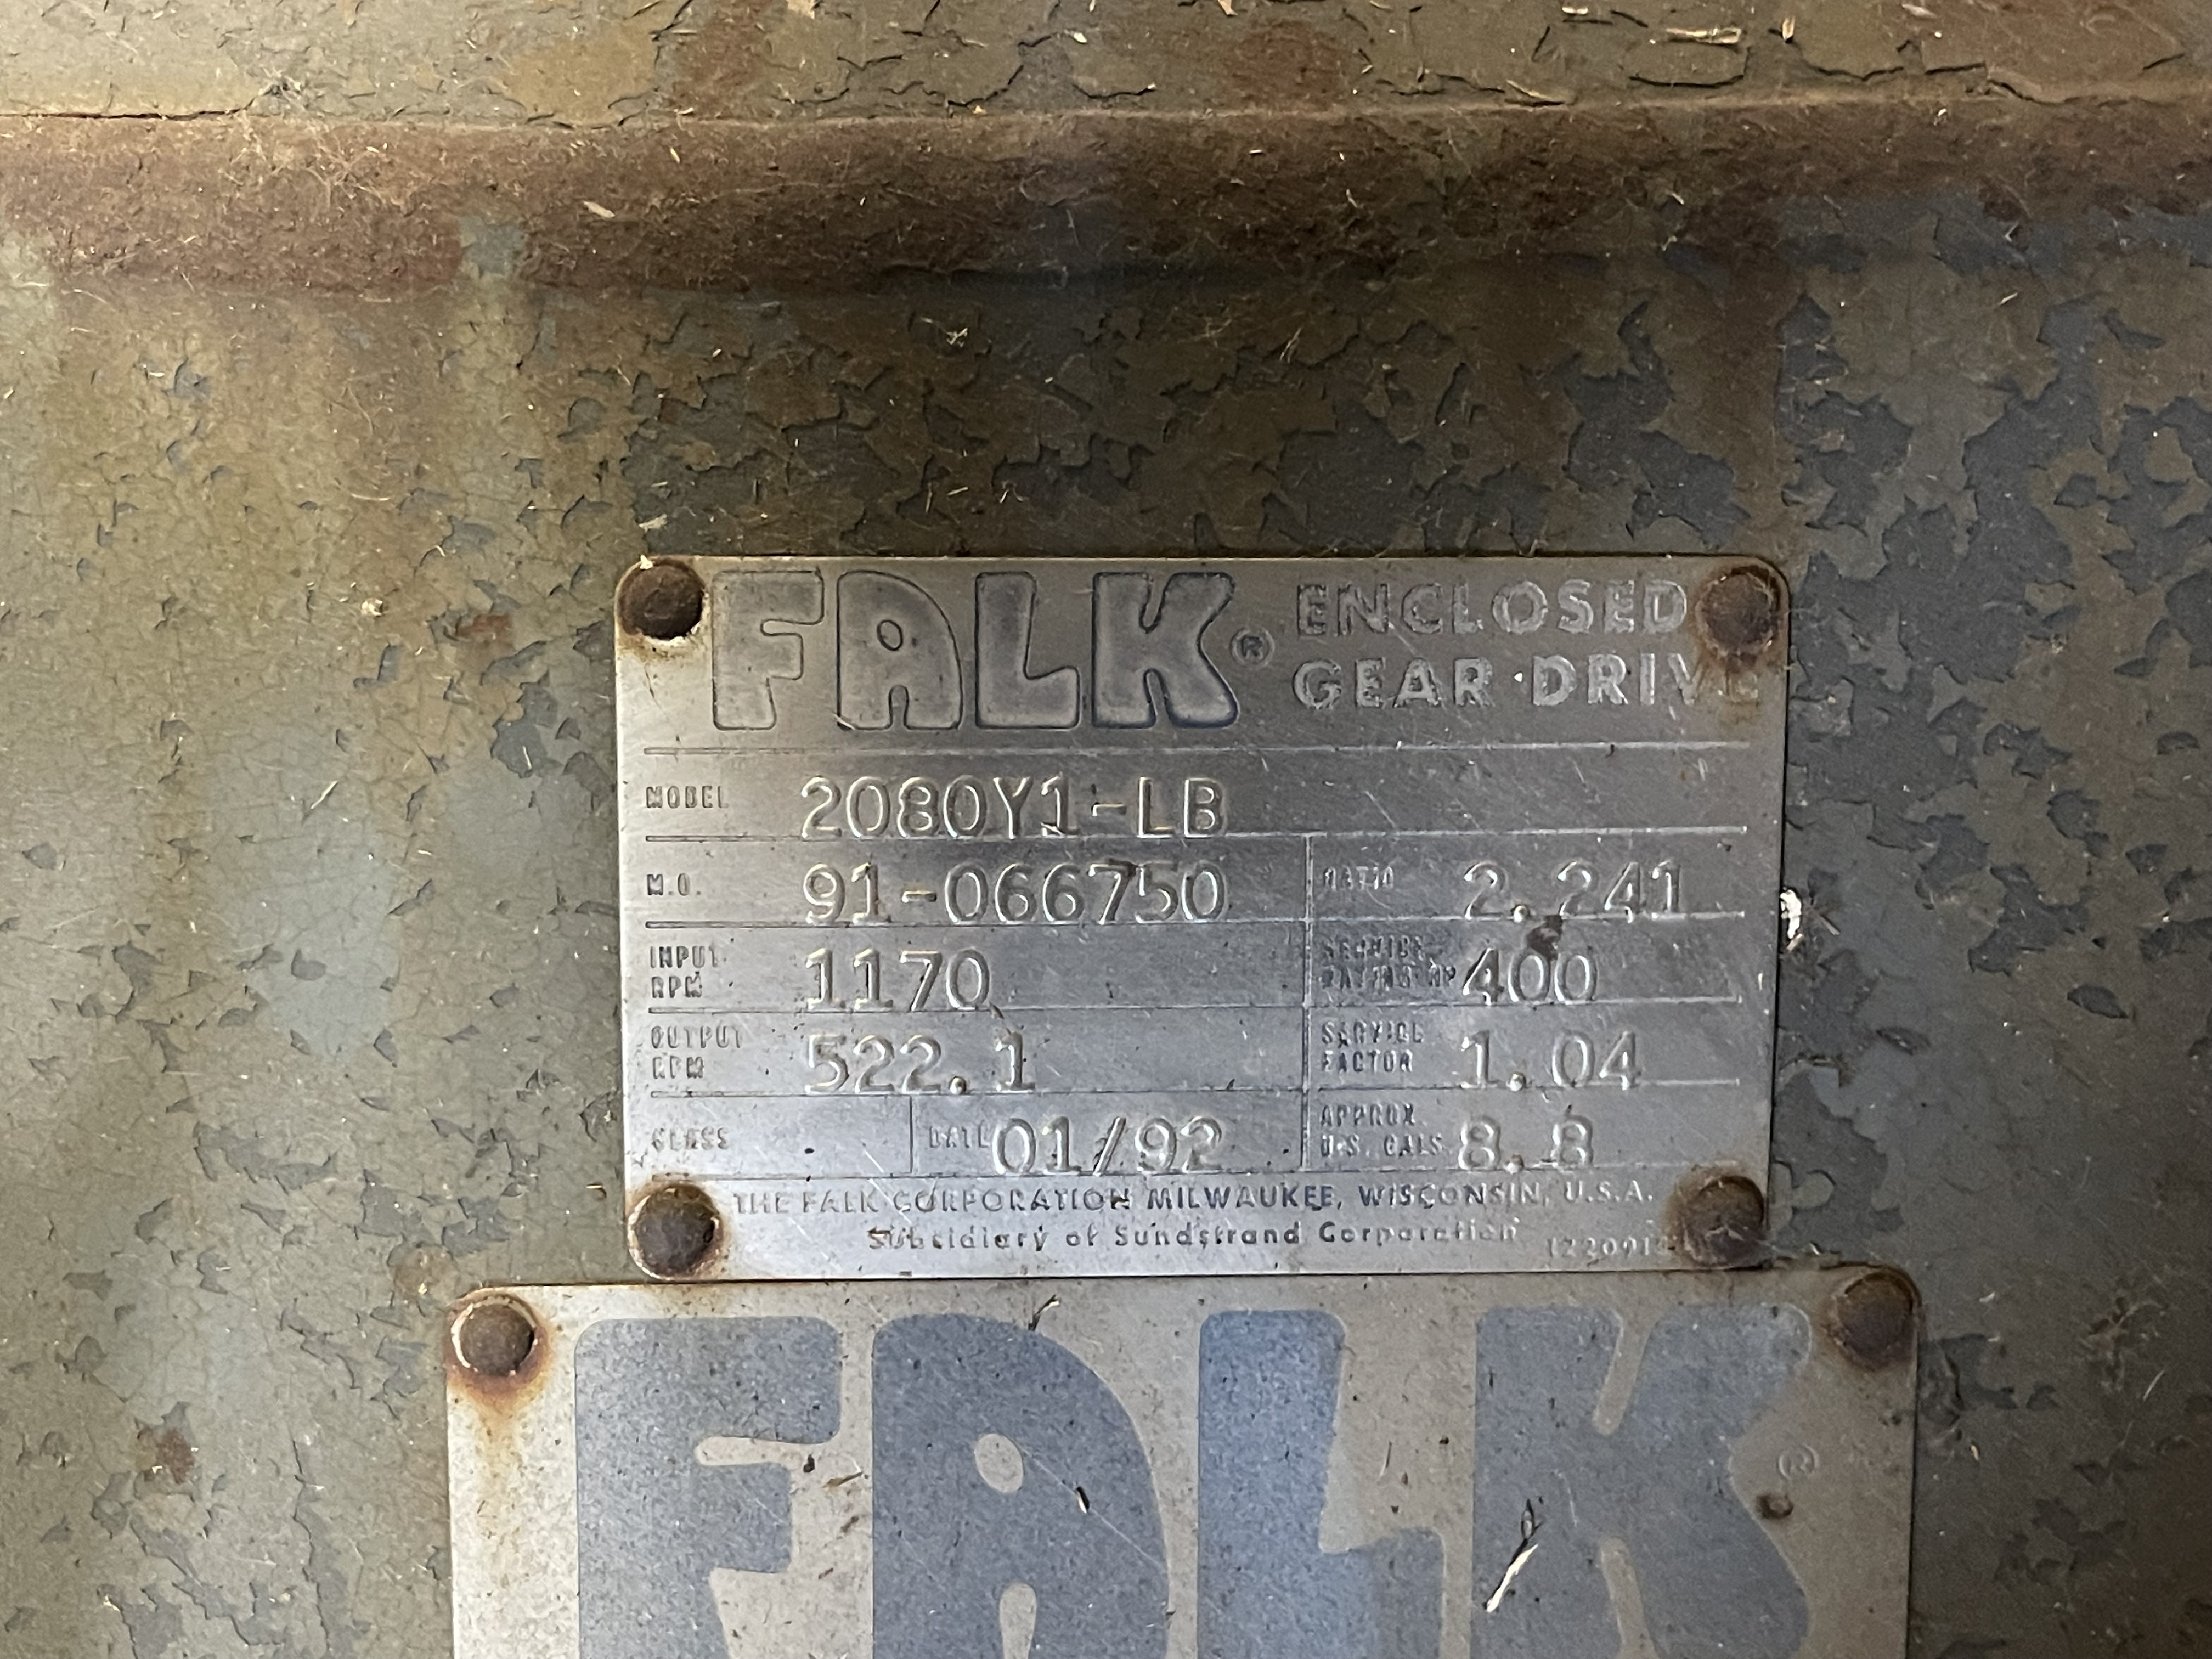 Falk Enclosed Gear Drive Model 2080Y1-LB